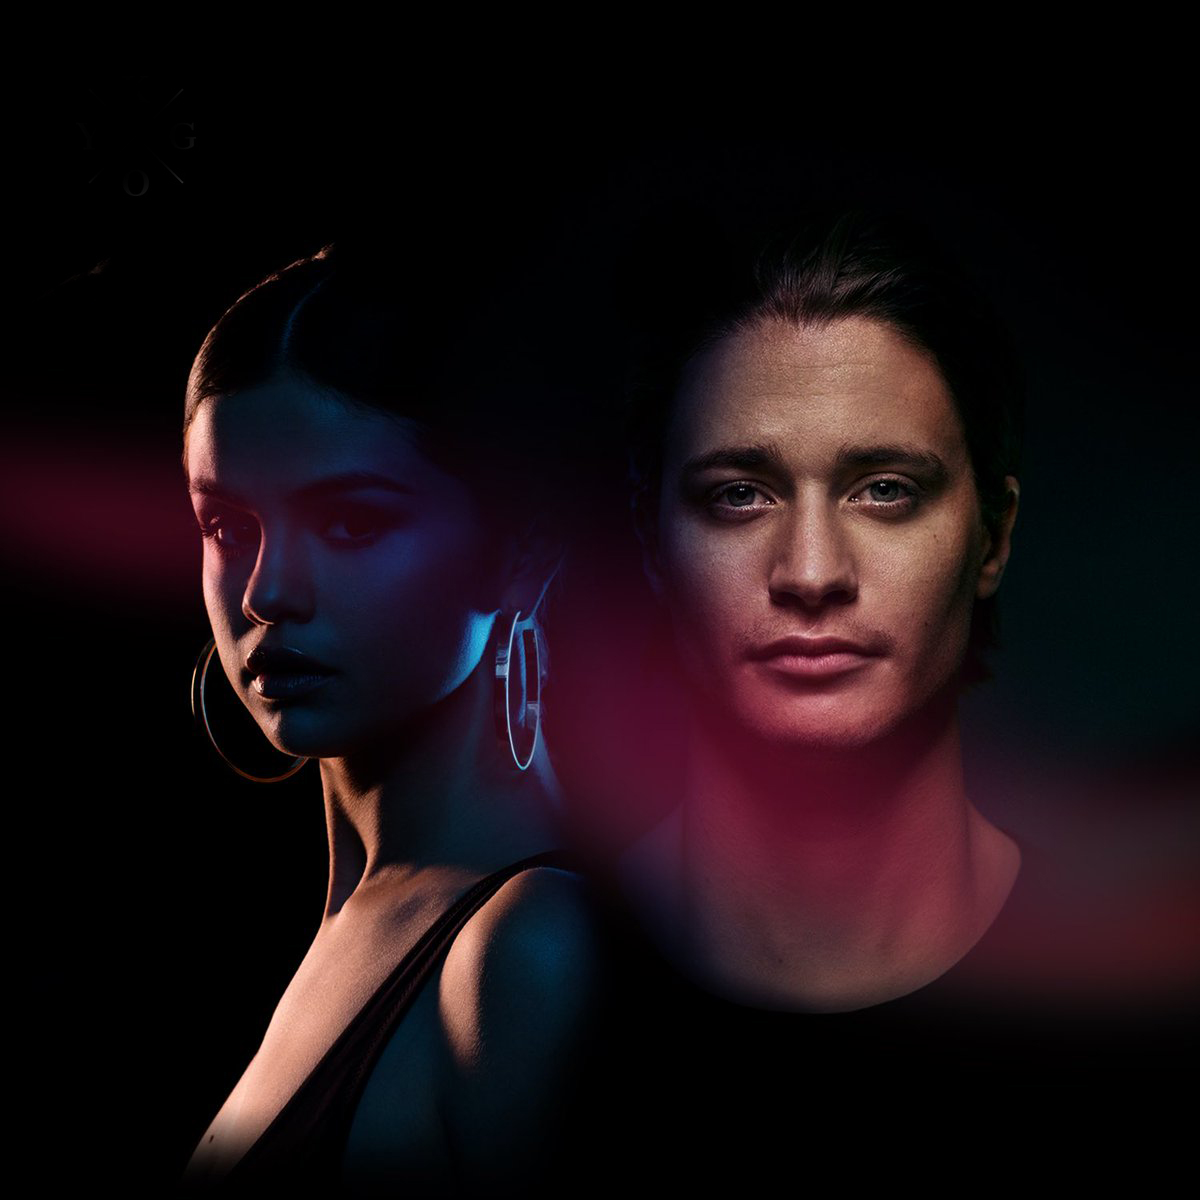 Kygo estrena canción "It Ain't Me" junto a Selena Gómez. Cusica plus